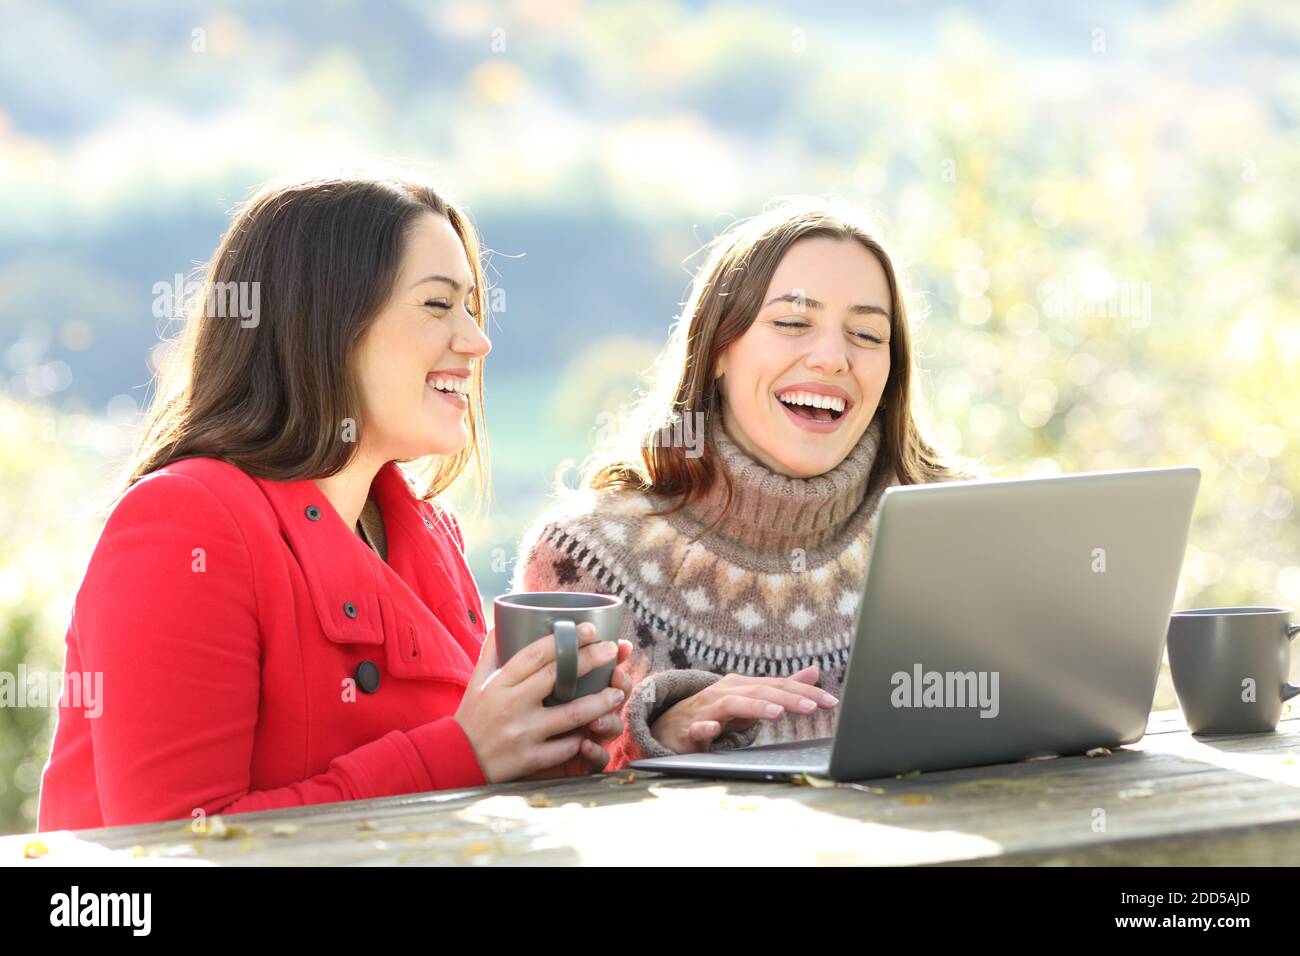 Deux heureux amis rient en regardant le contenu d'un ordinateur portable en hiver assis en montagne Banque D'Images